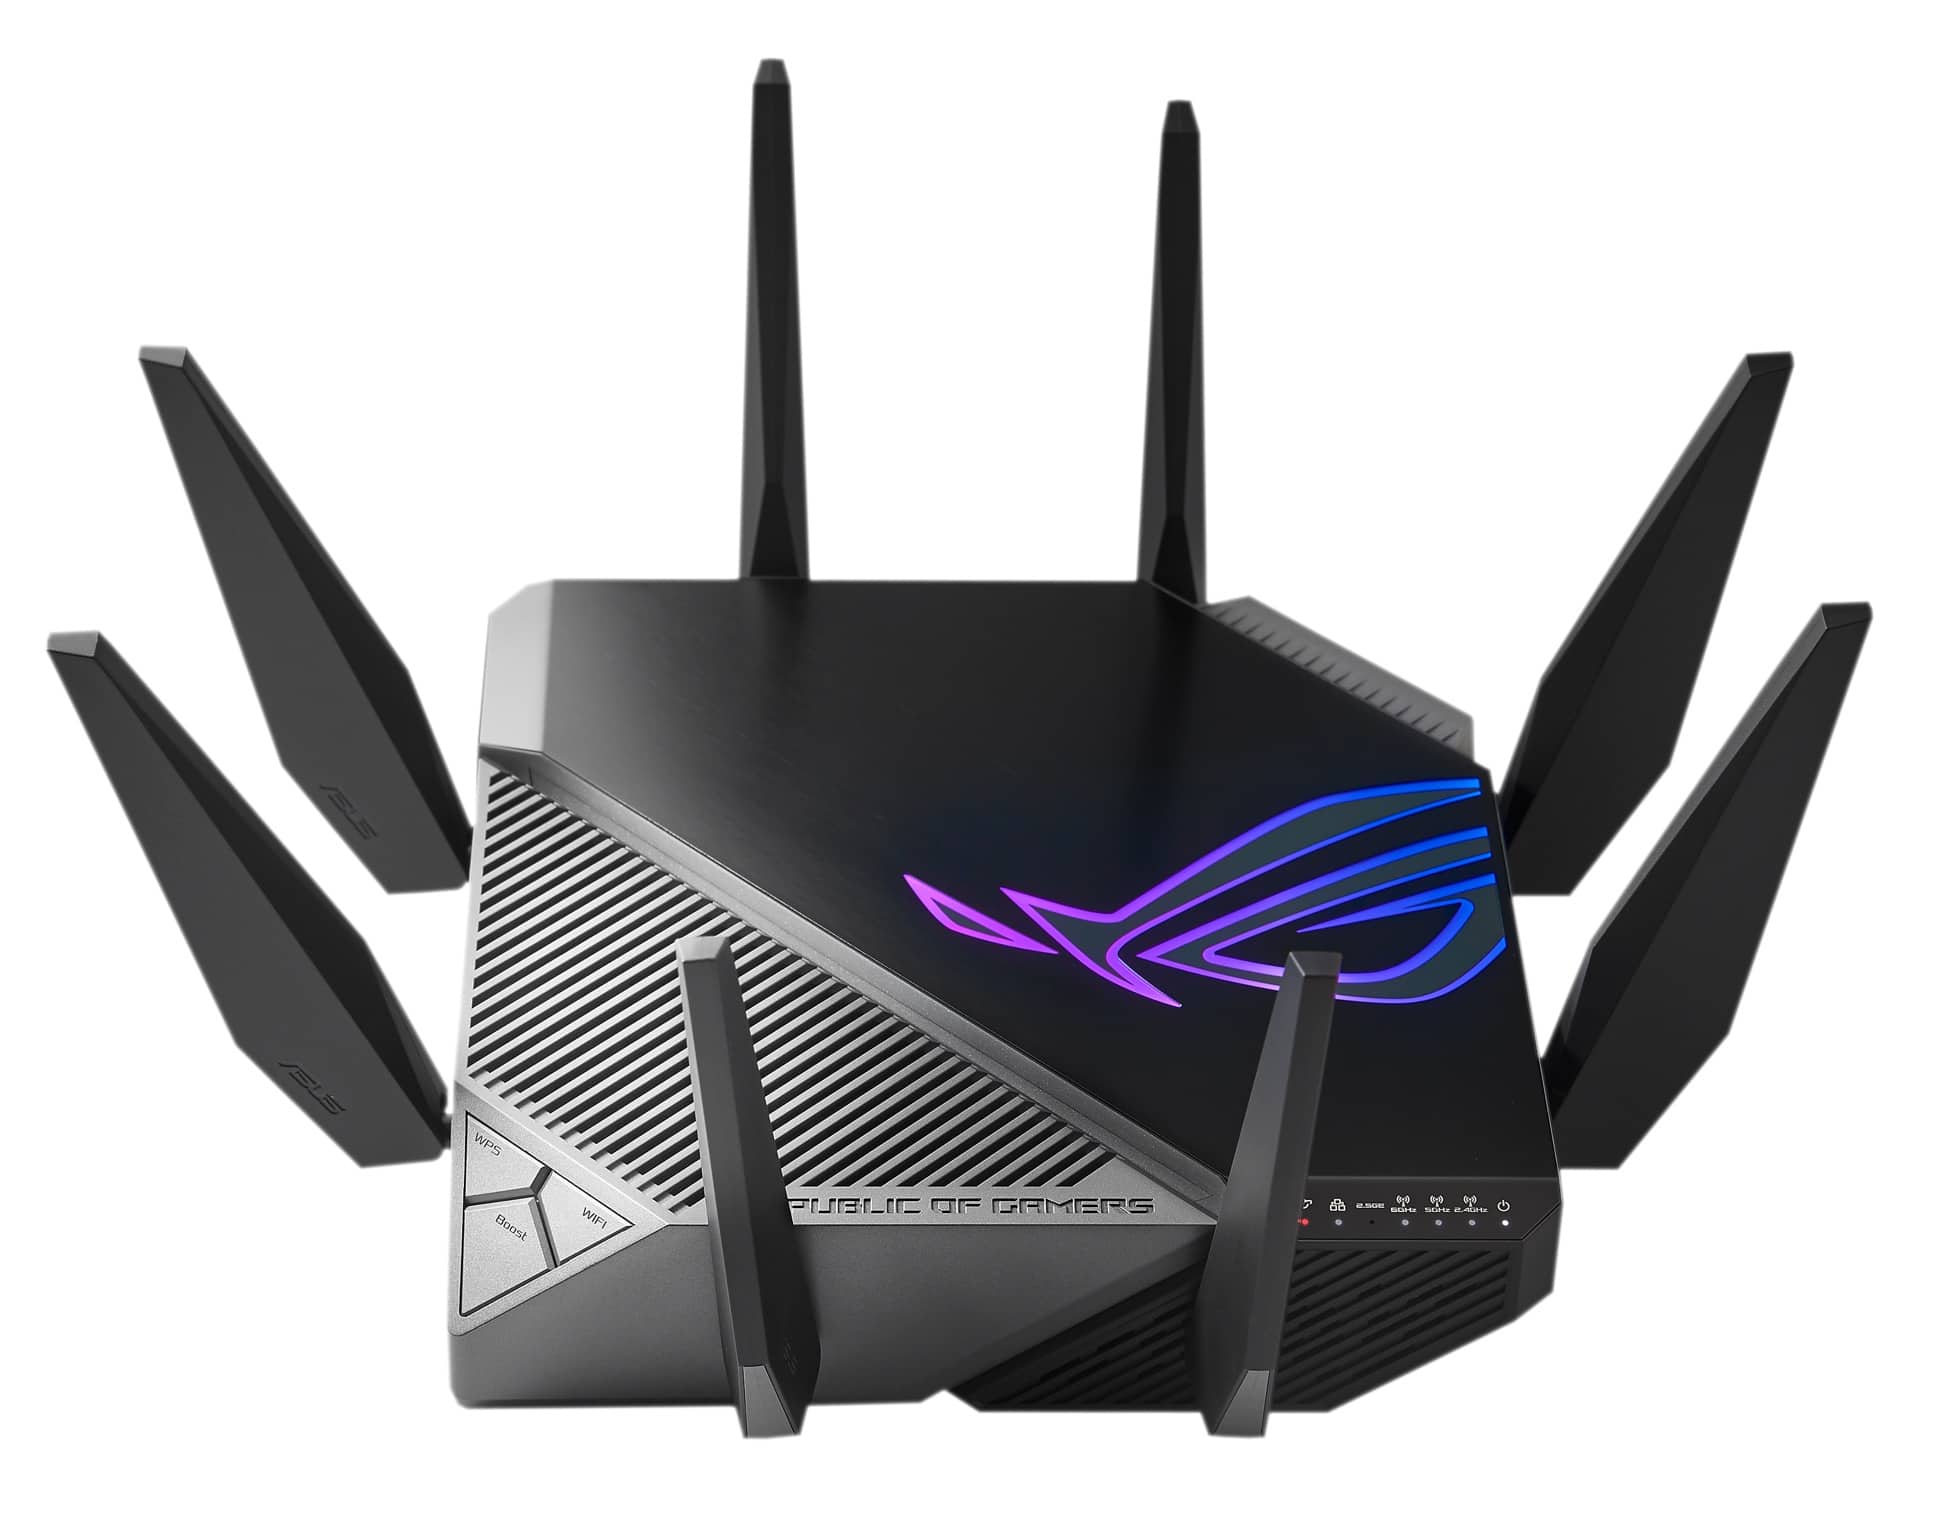 ASUS ROG ra mắt router Rapture GT-AXE11000 trang bị Wi-Fi 6E đầu tiên trên thế giới